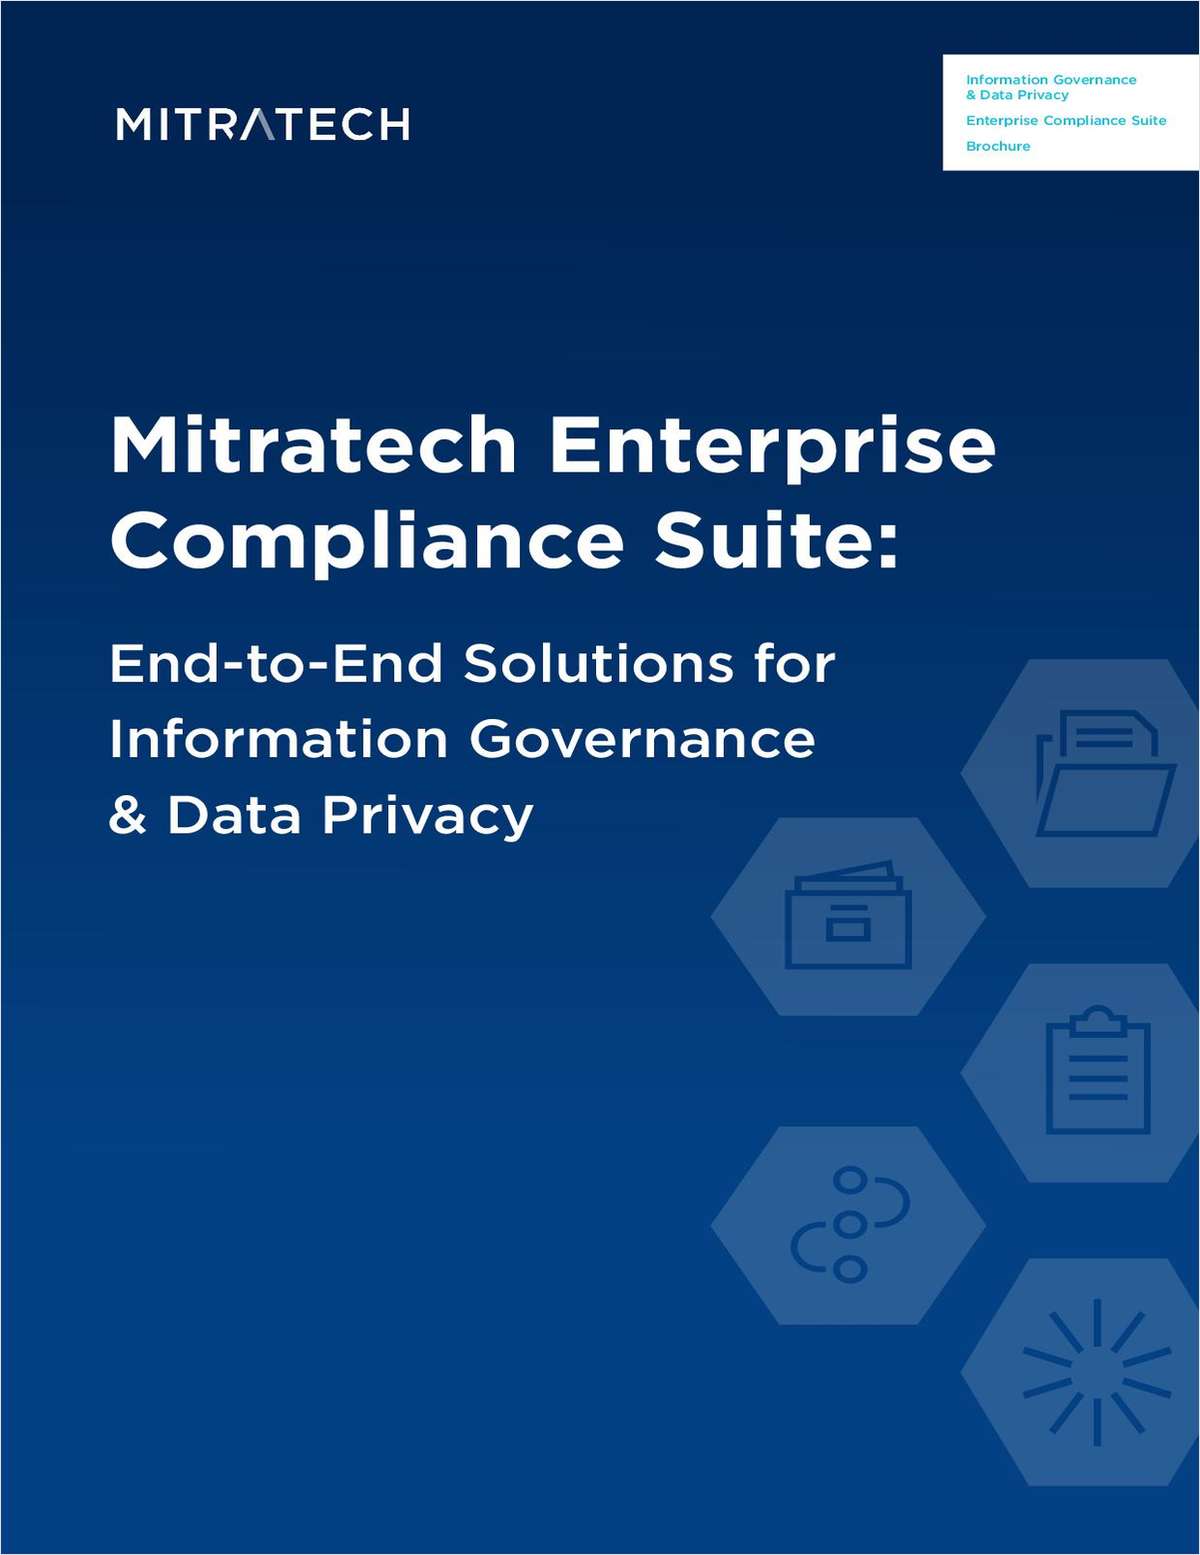 Brochure: Mitratech Enterprise Compliance Suite